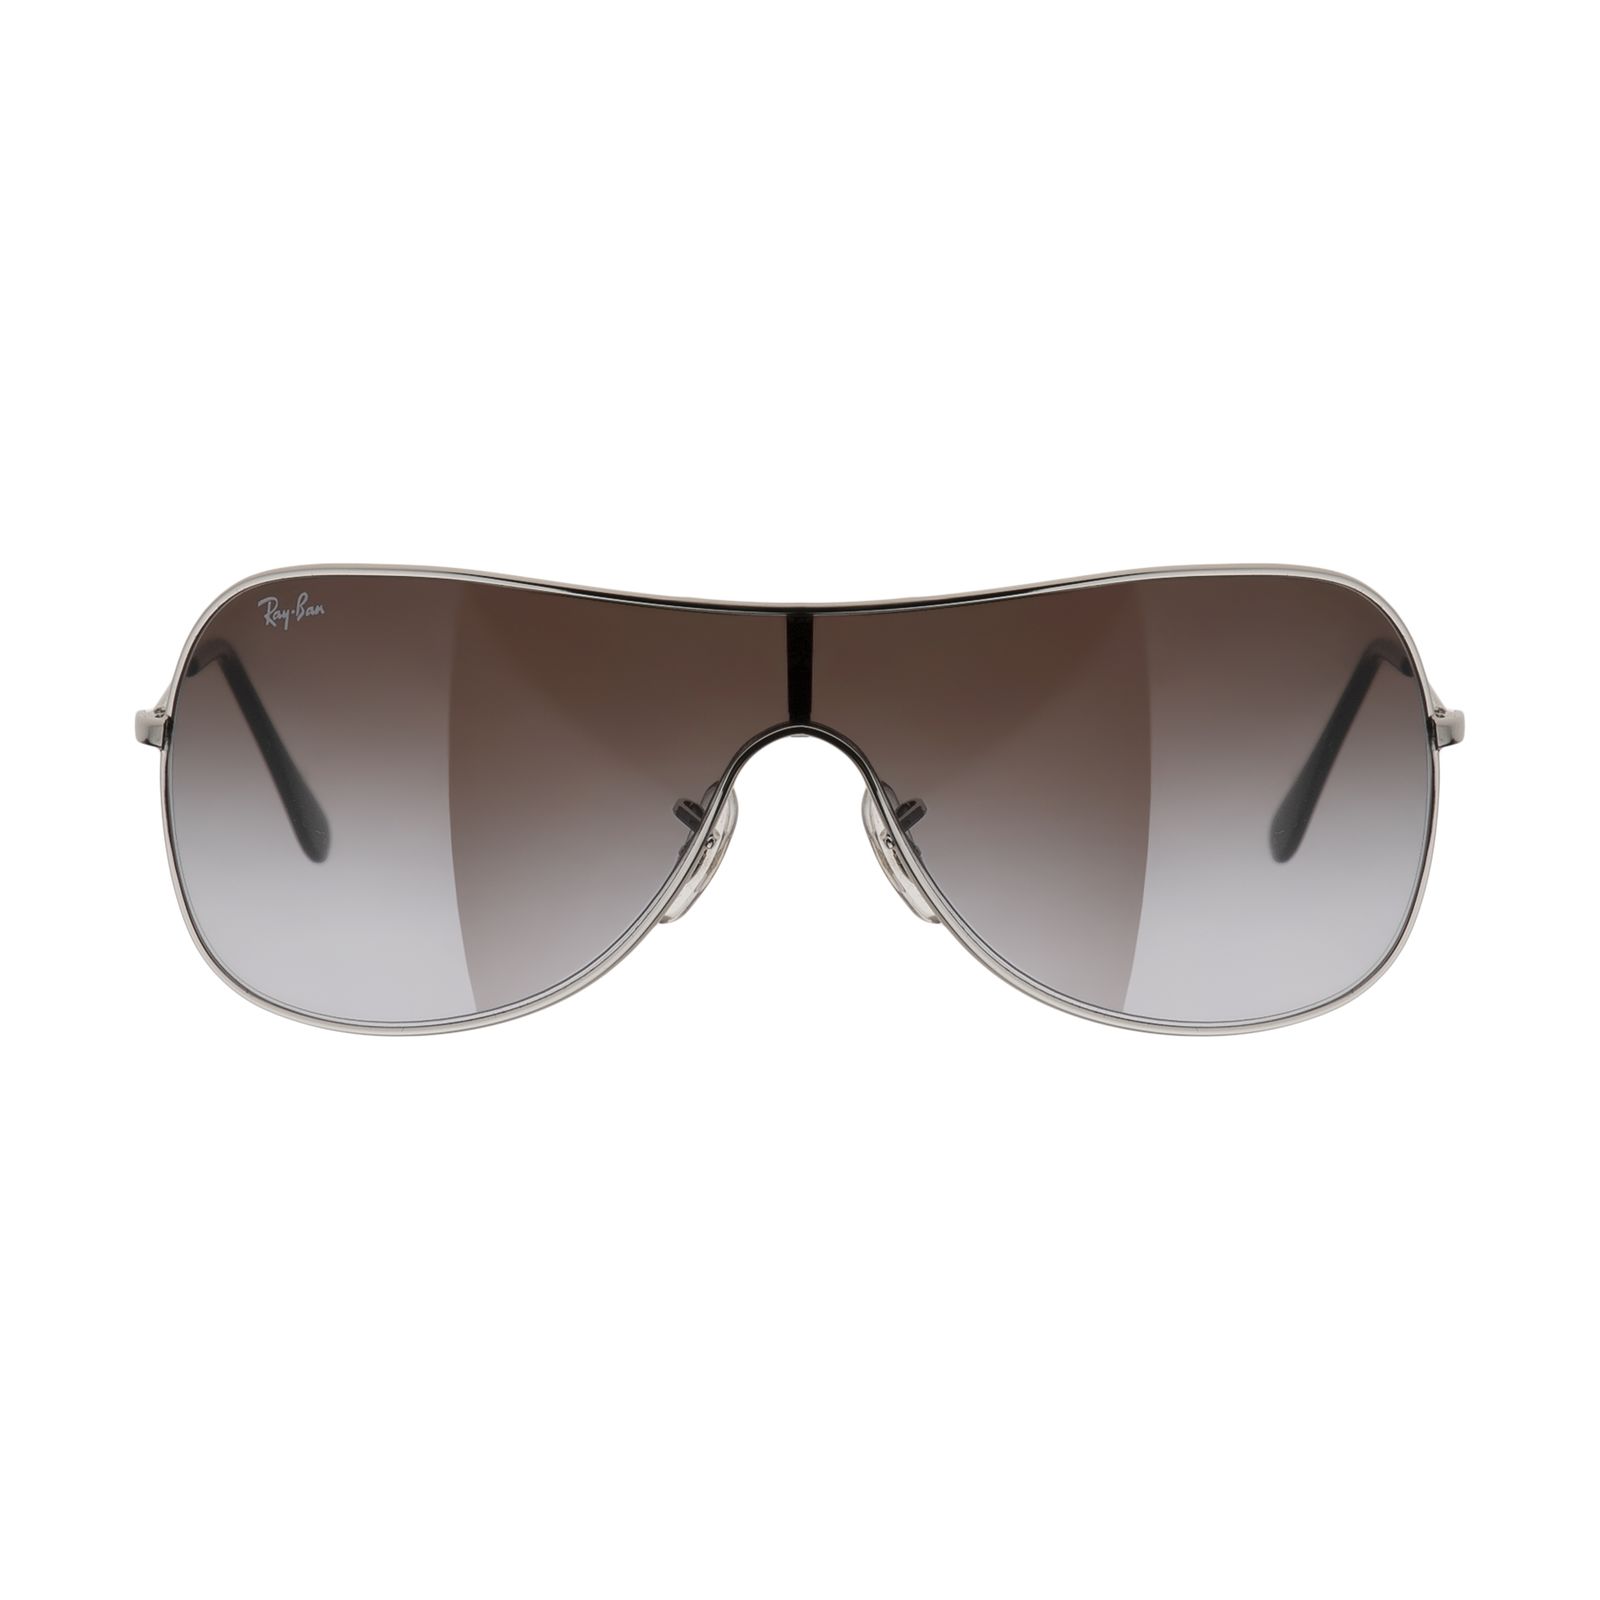 عینک آفتابی ری بن مدل 3211-003/68-32 -  - 2